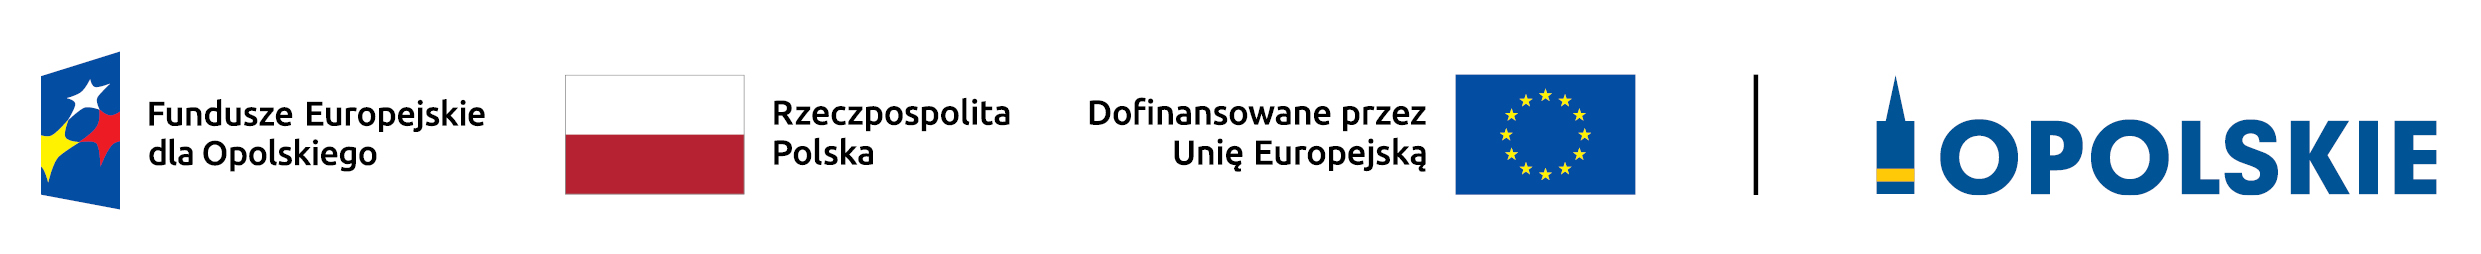 Baner - Fundusze Europejskie dla Opolskiego